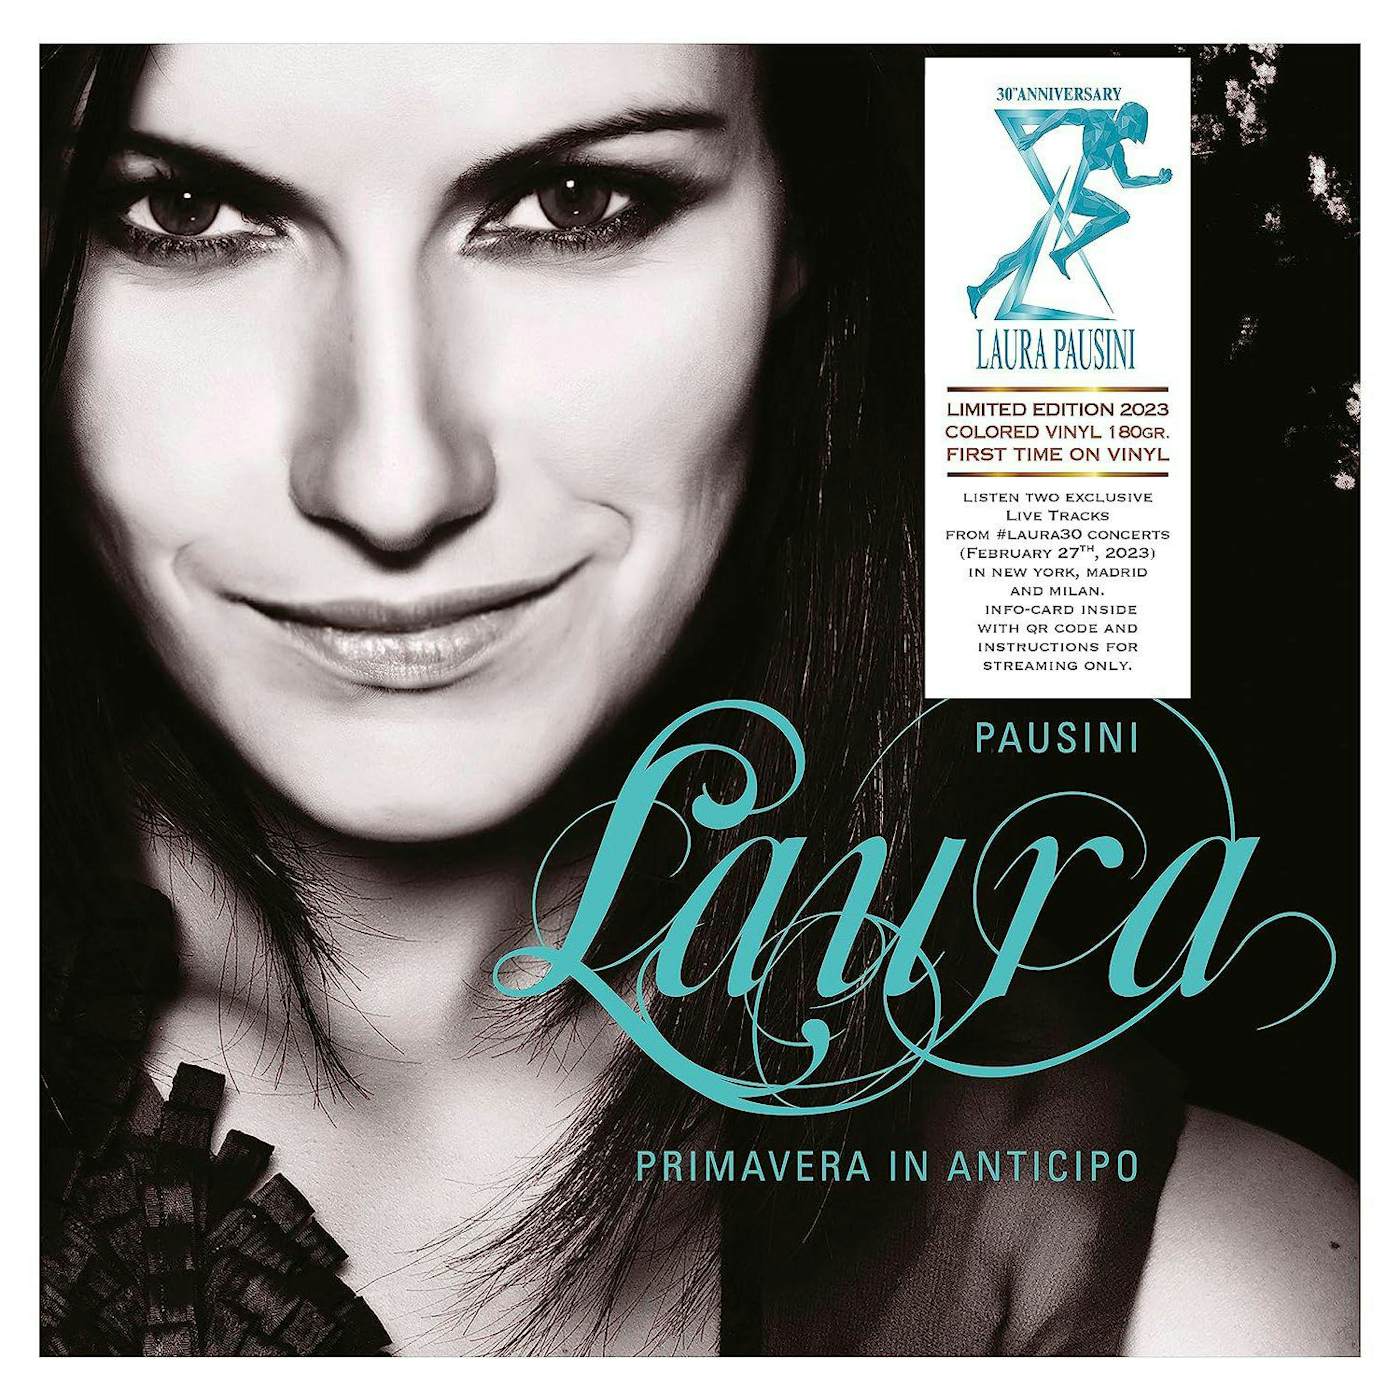 Primavera In Anticipo Vinyl Record - Laura Pausini